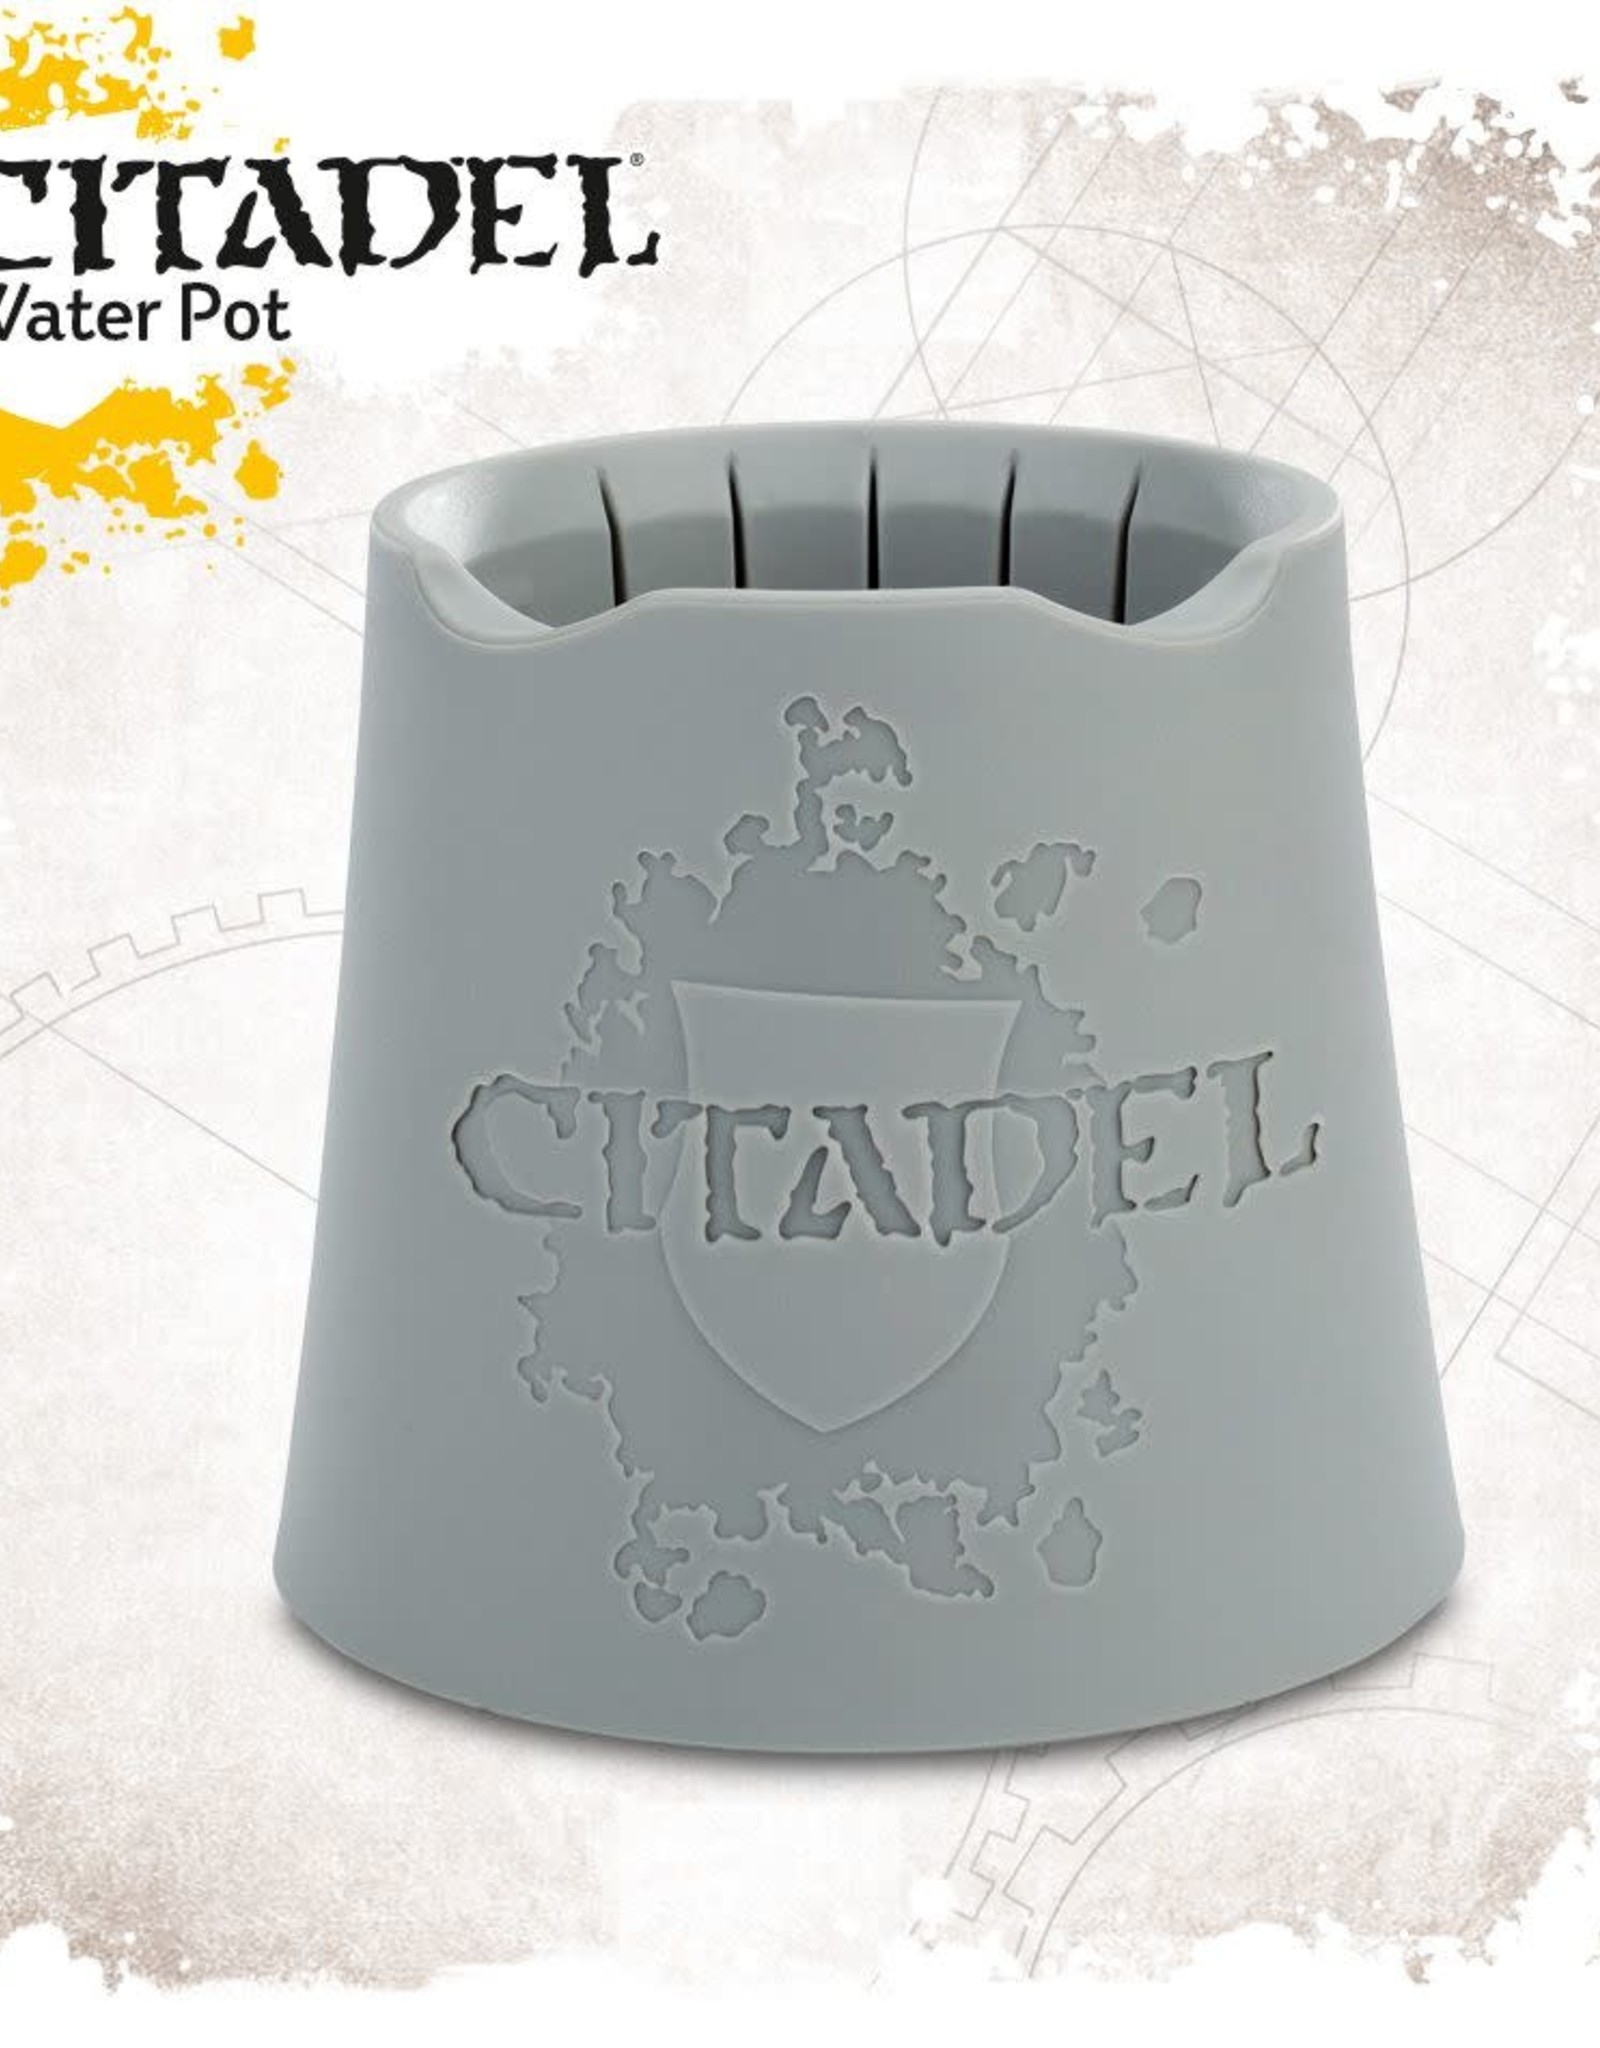 Games Workshop Citadel Water Pot